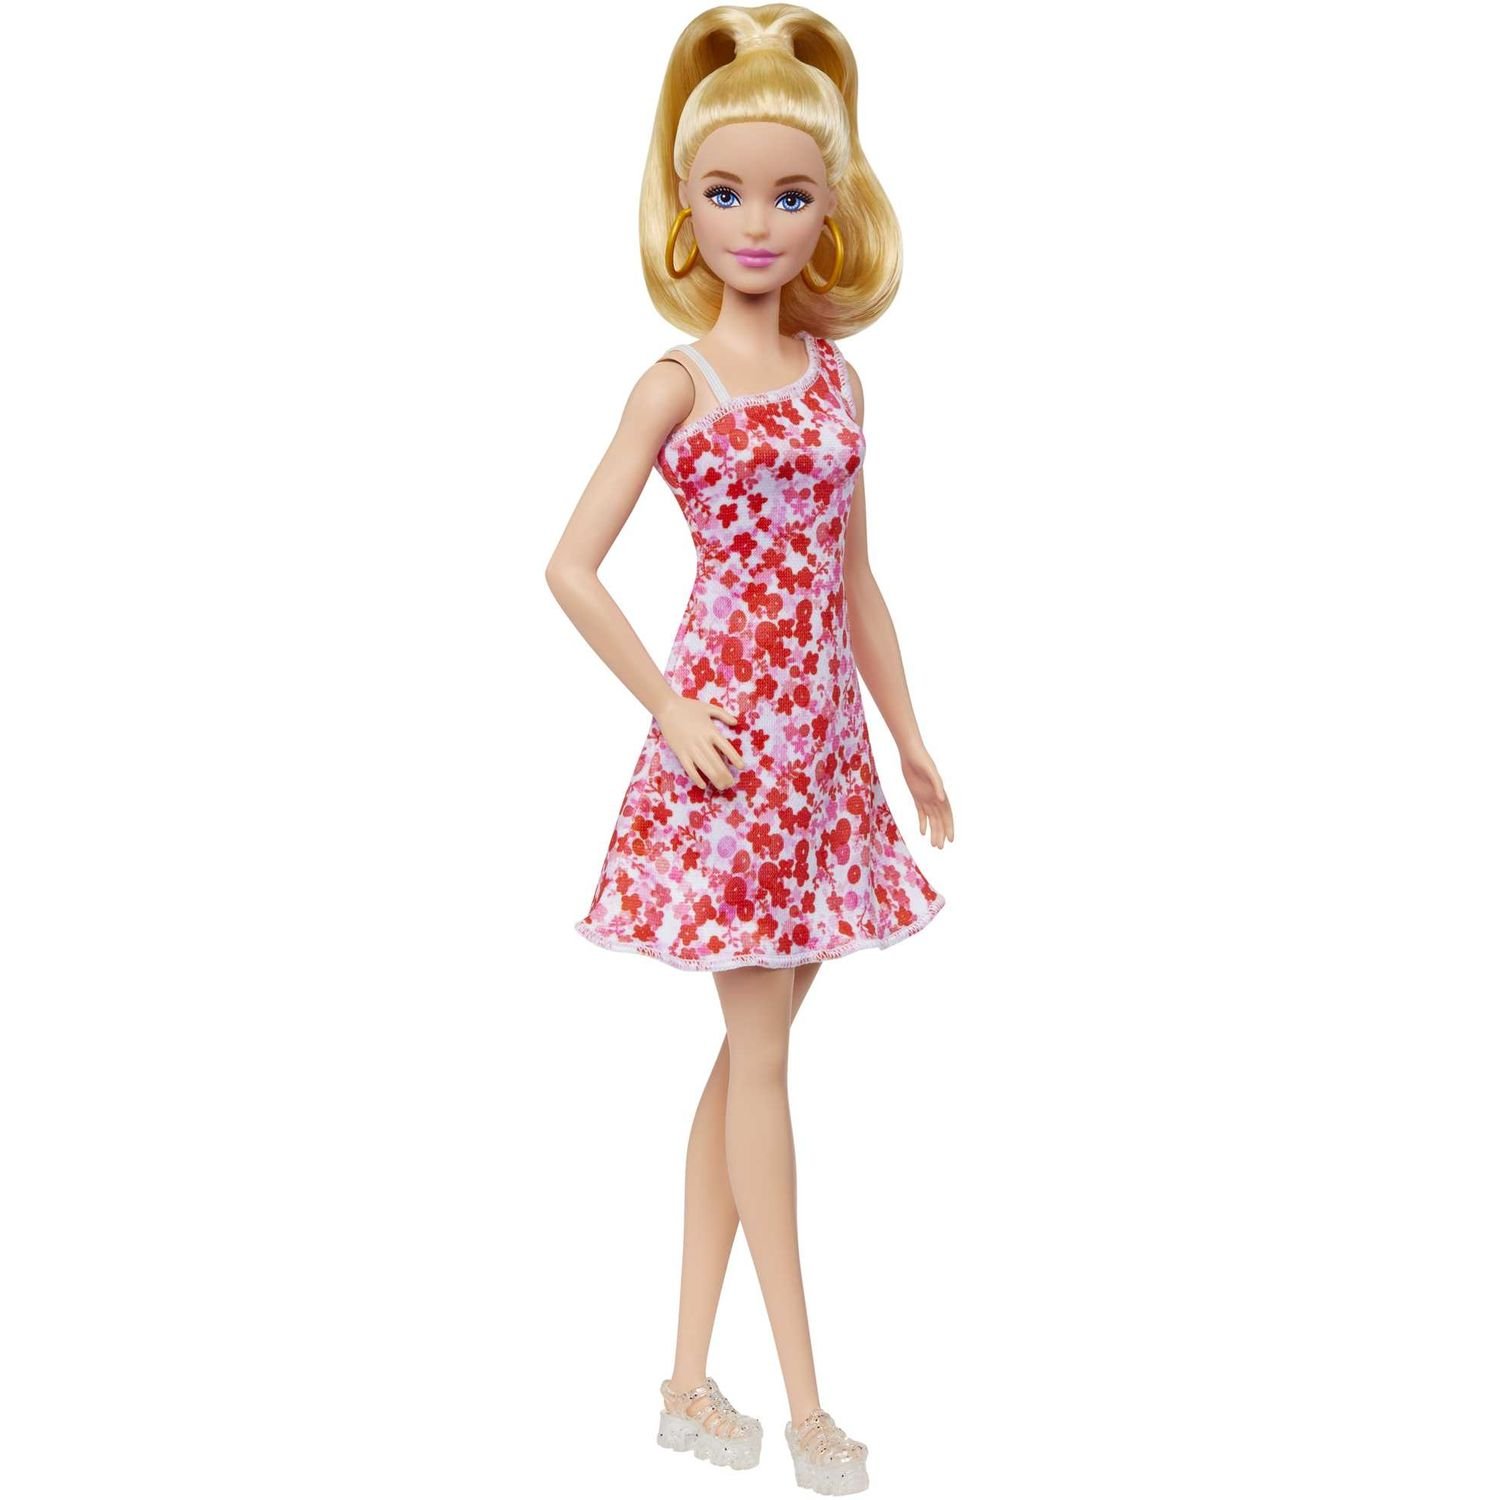 Лялька Barbie Модниця у сарафані в квітковий принт, 30 см (HJT02) - фото 1